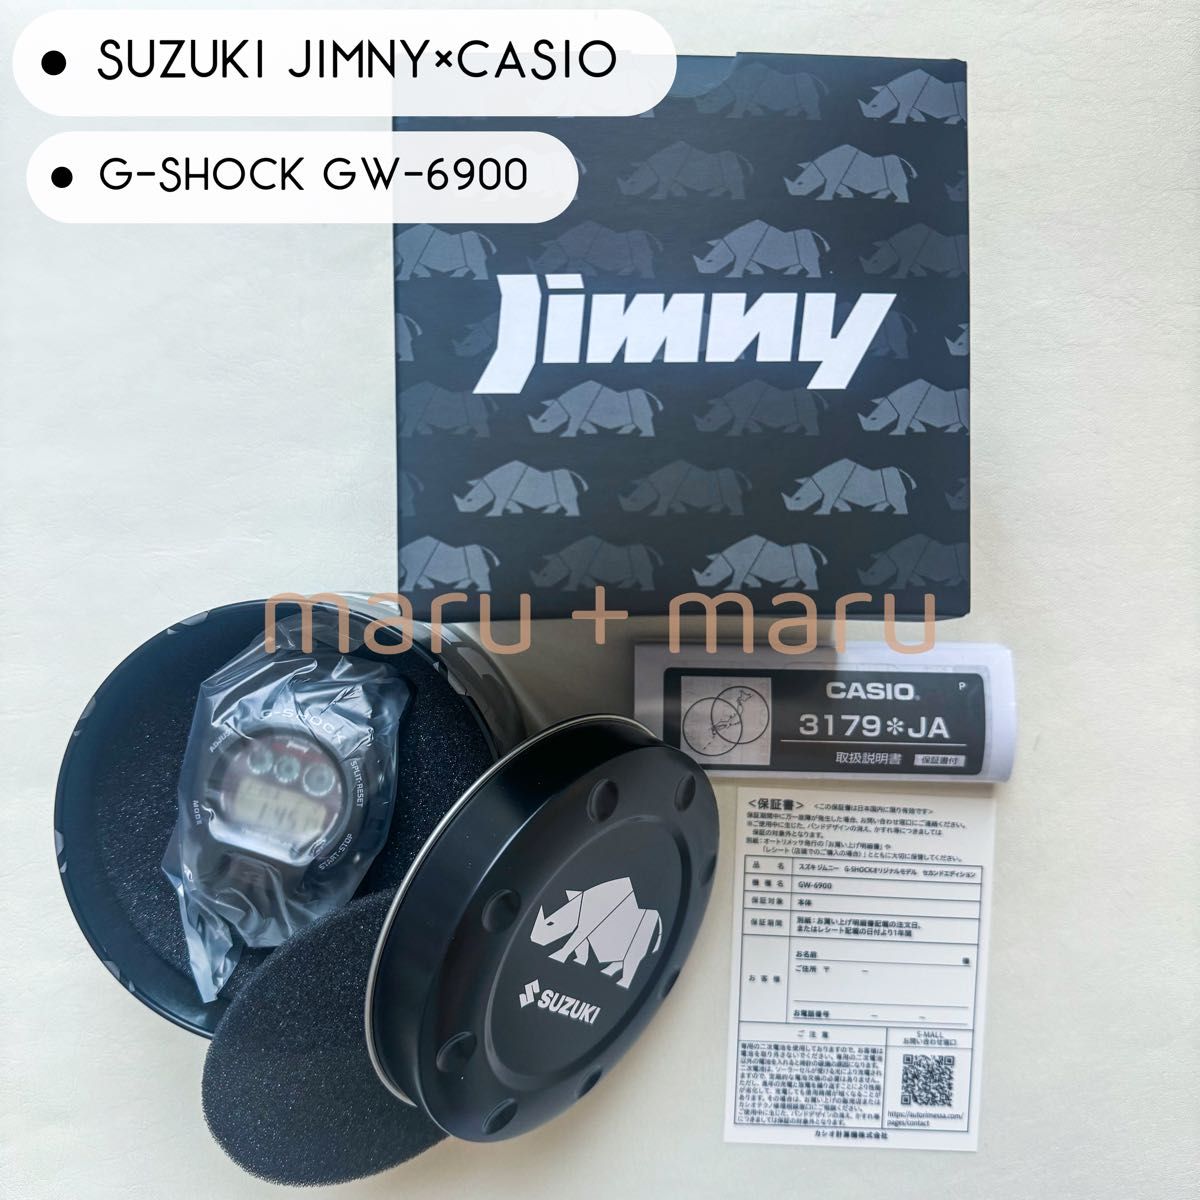 中日キャンプ 【1000個限定品】SUZUKI JIMNY×CASIO G-SHOCK GW-6900 l